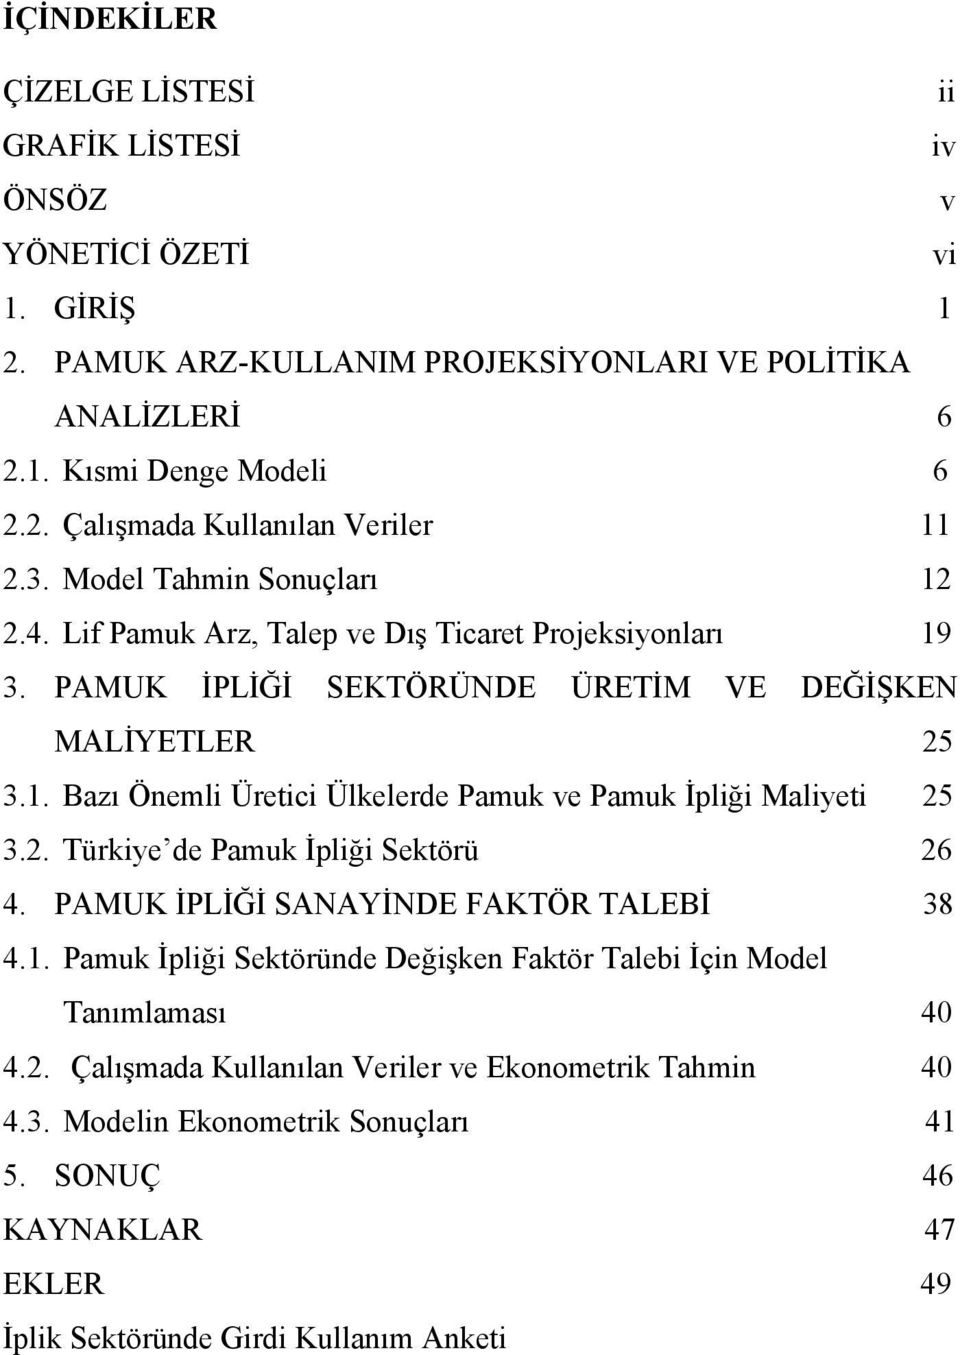 2. Türkiye de Pamuk İpliği Sektörü 26 4. PAMUK İPLİĞİ SANAYİNDE FAKTÖR TALEBİ 38 4.1. Pamuk İpliği Sektöründe Değişken Faktör Talebi İçin Model Tanımlaması 40 4.2. Çalışmada Kullanılan Veriler ve Ekonometrik Tahmin 40 4.